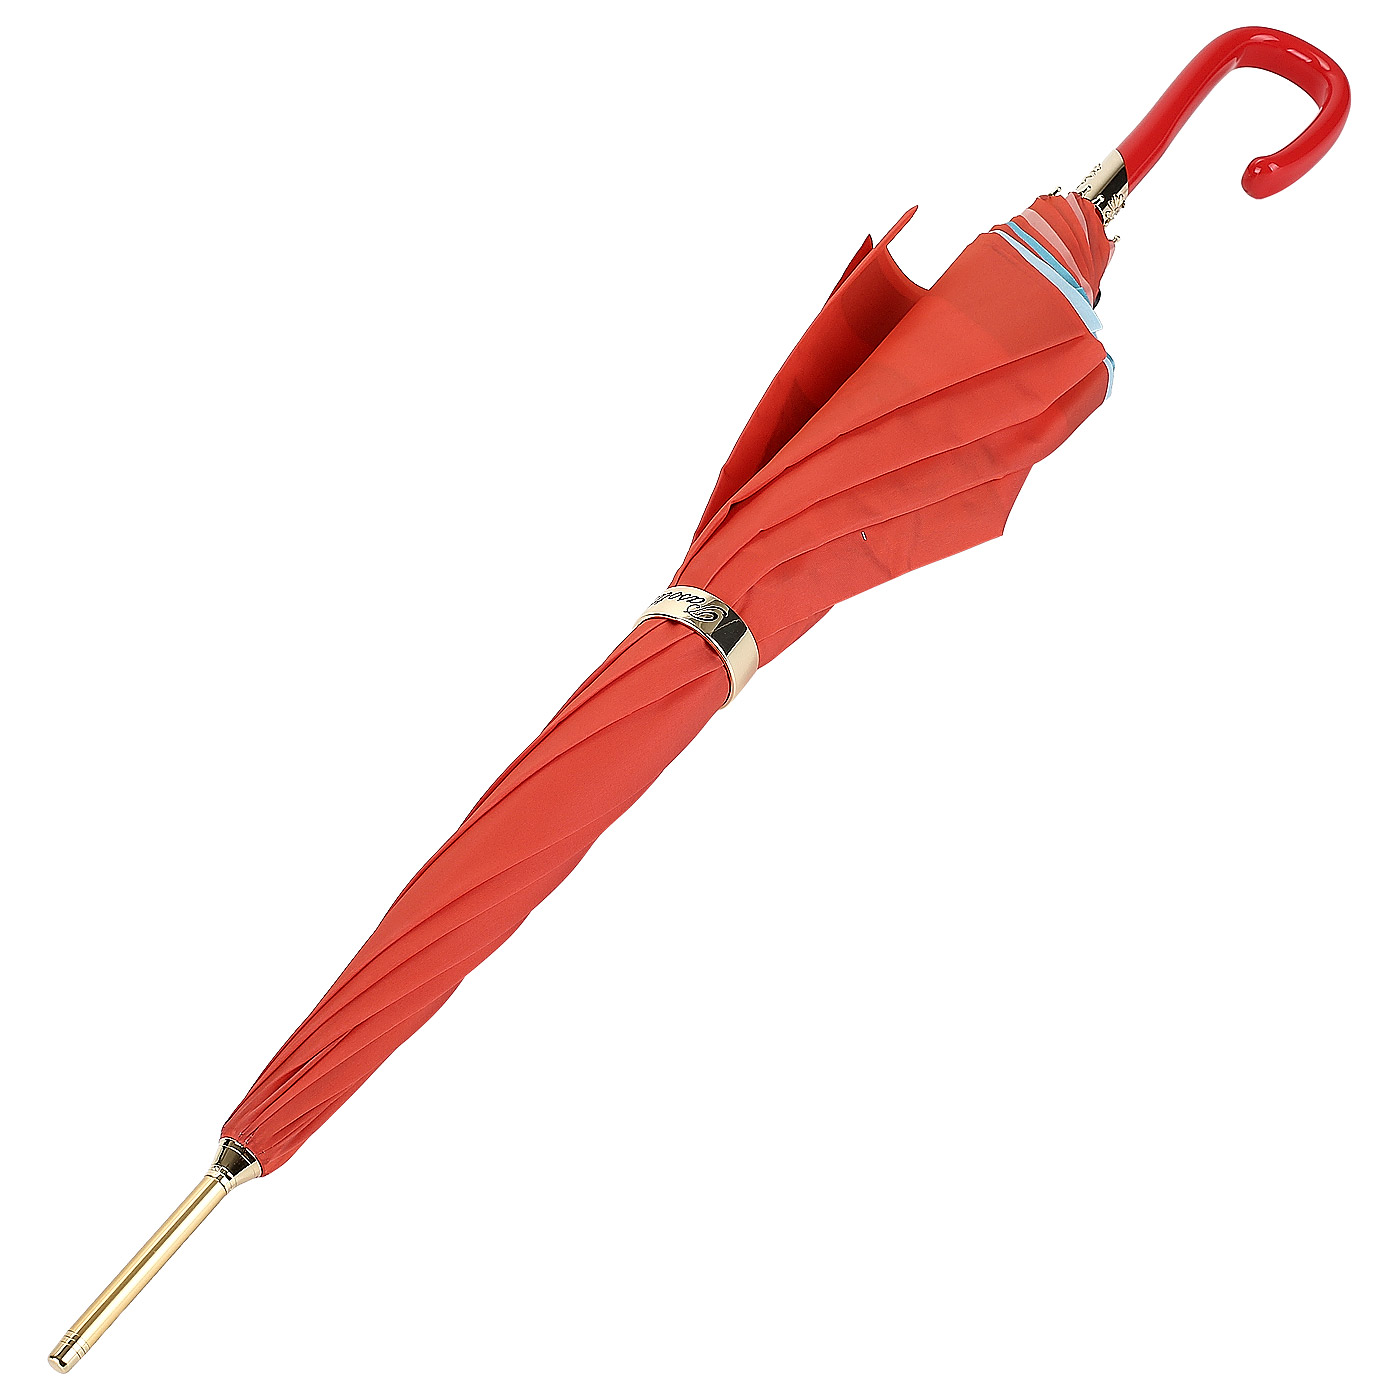 Механический красный зонт Pasotti 